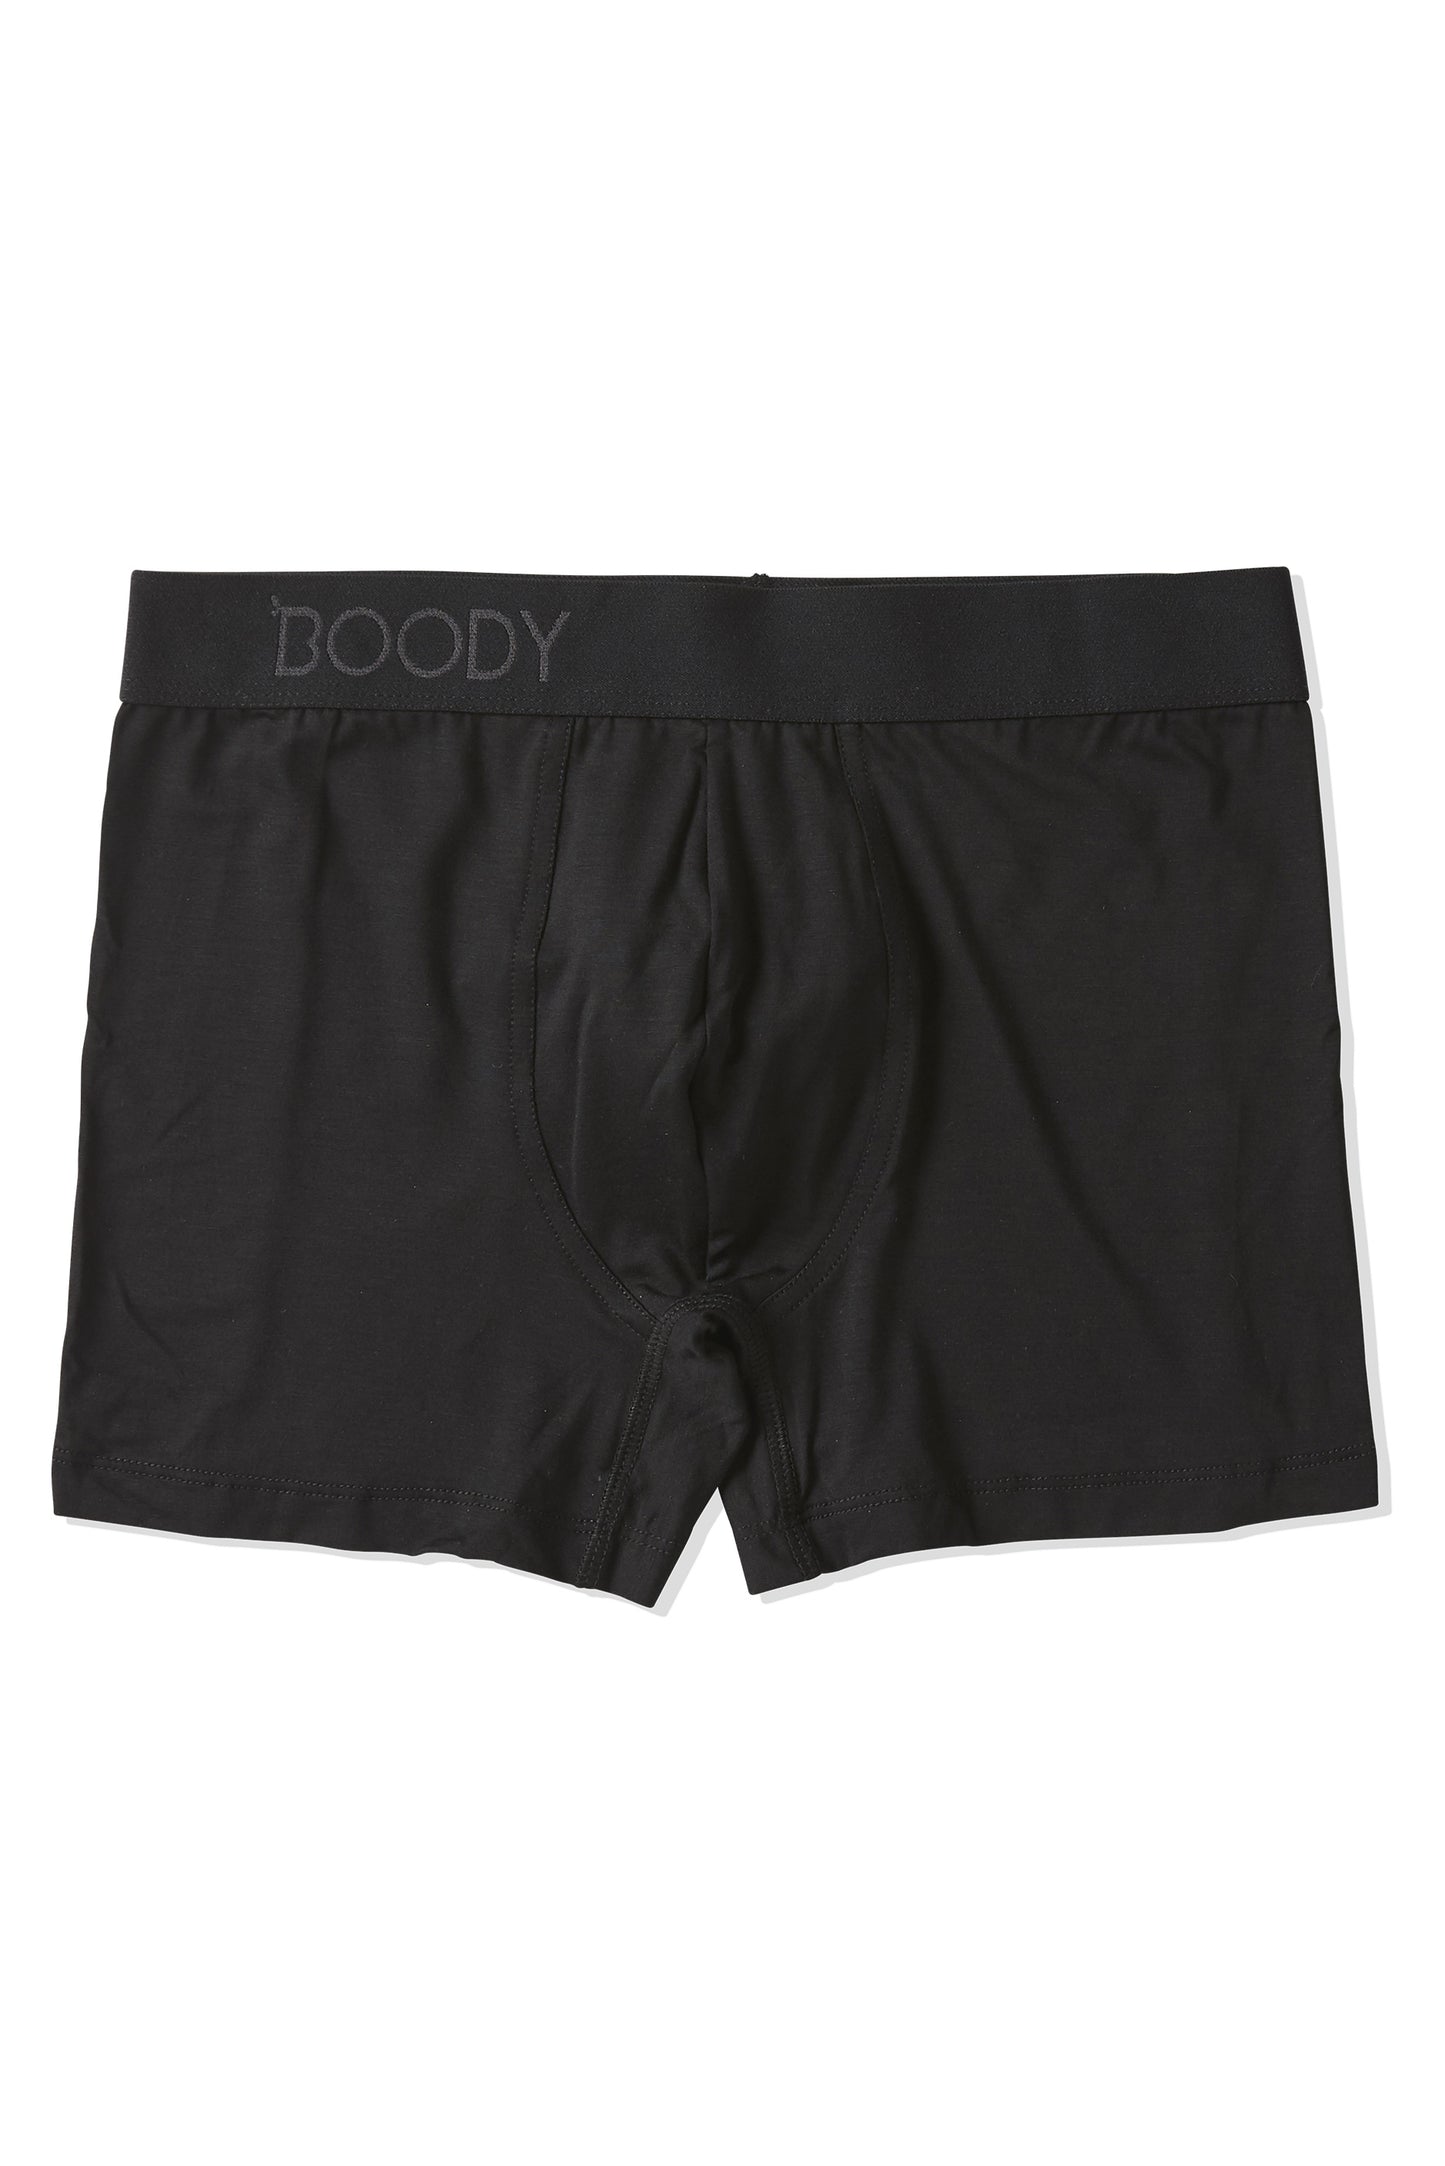 BOODY - Men´s Everyday boxerit 3-pak